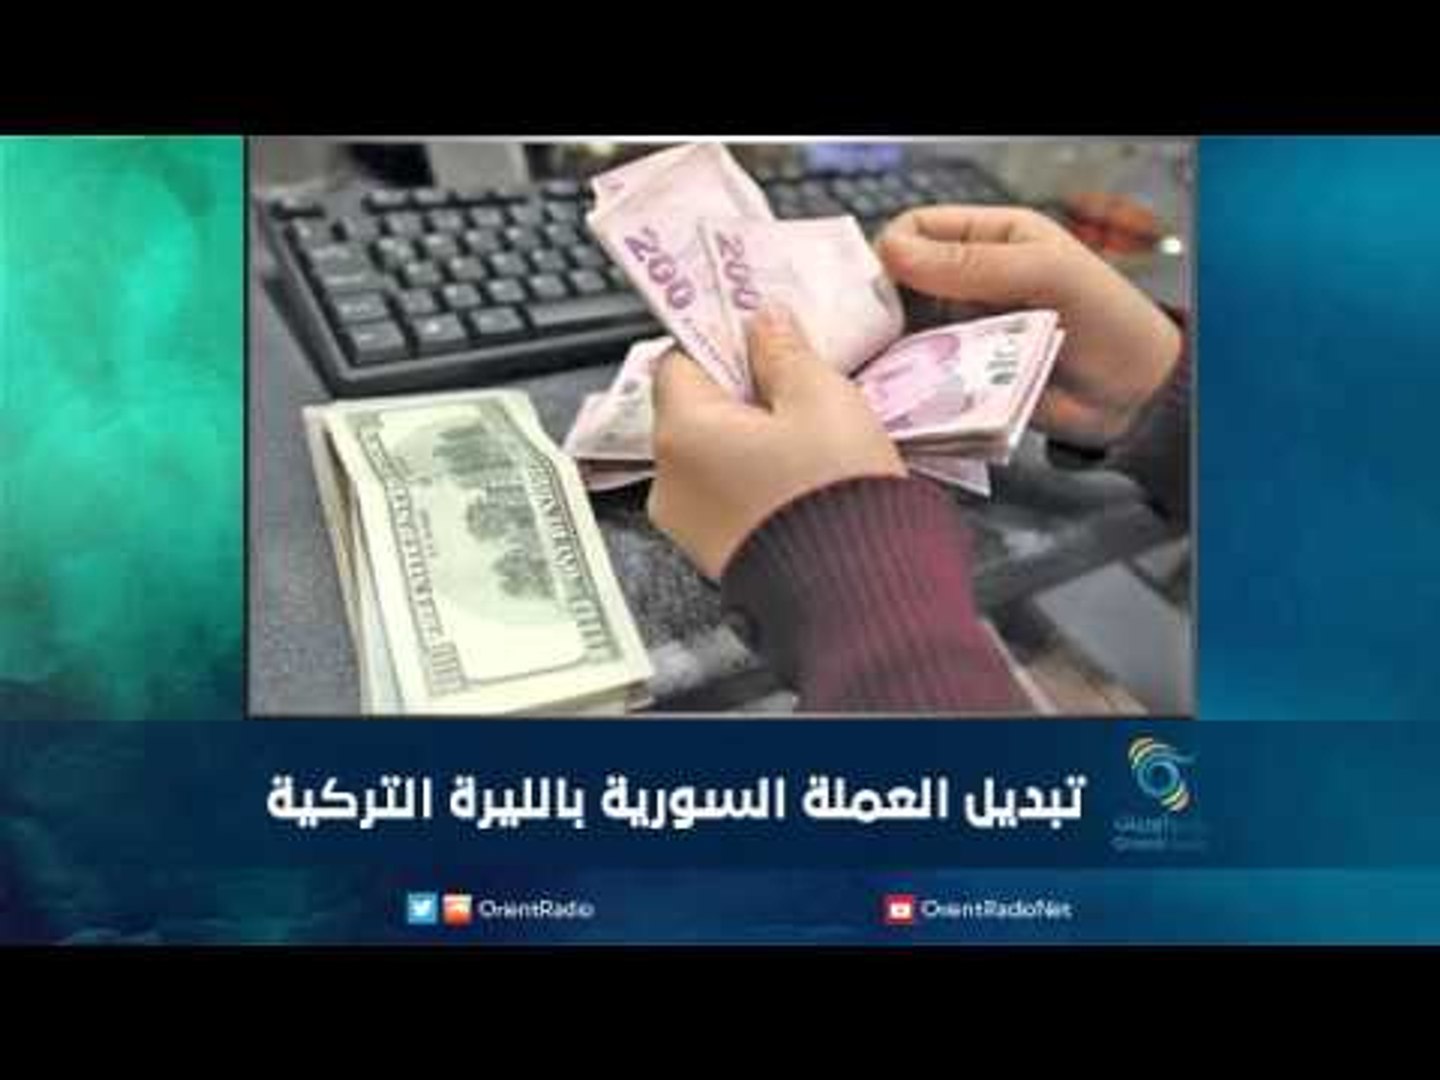 تبديل العملة السورية بالليرة التركية | رمانا الهوى - فيديو Dailymotion